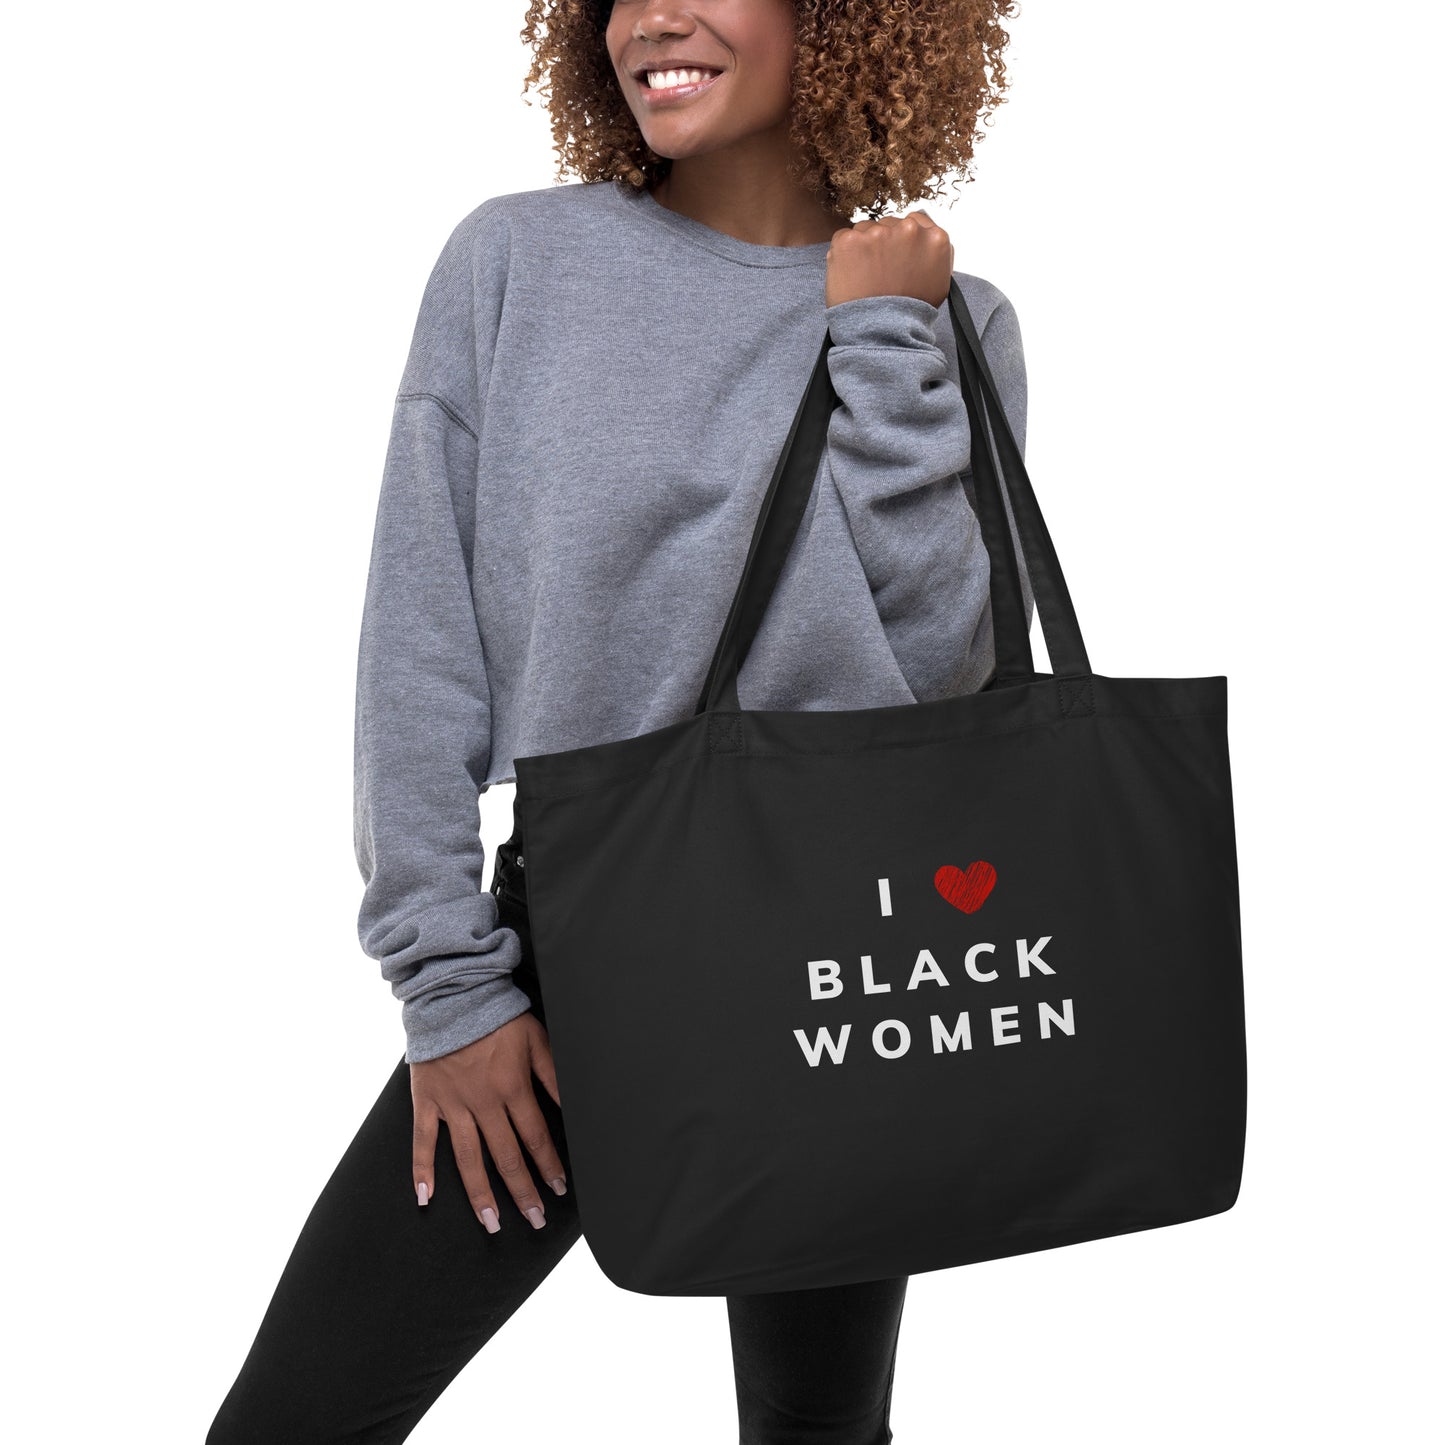 I HEART BLACK WOMEN White Letters Large organic tote bag